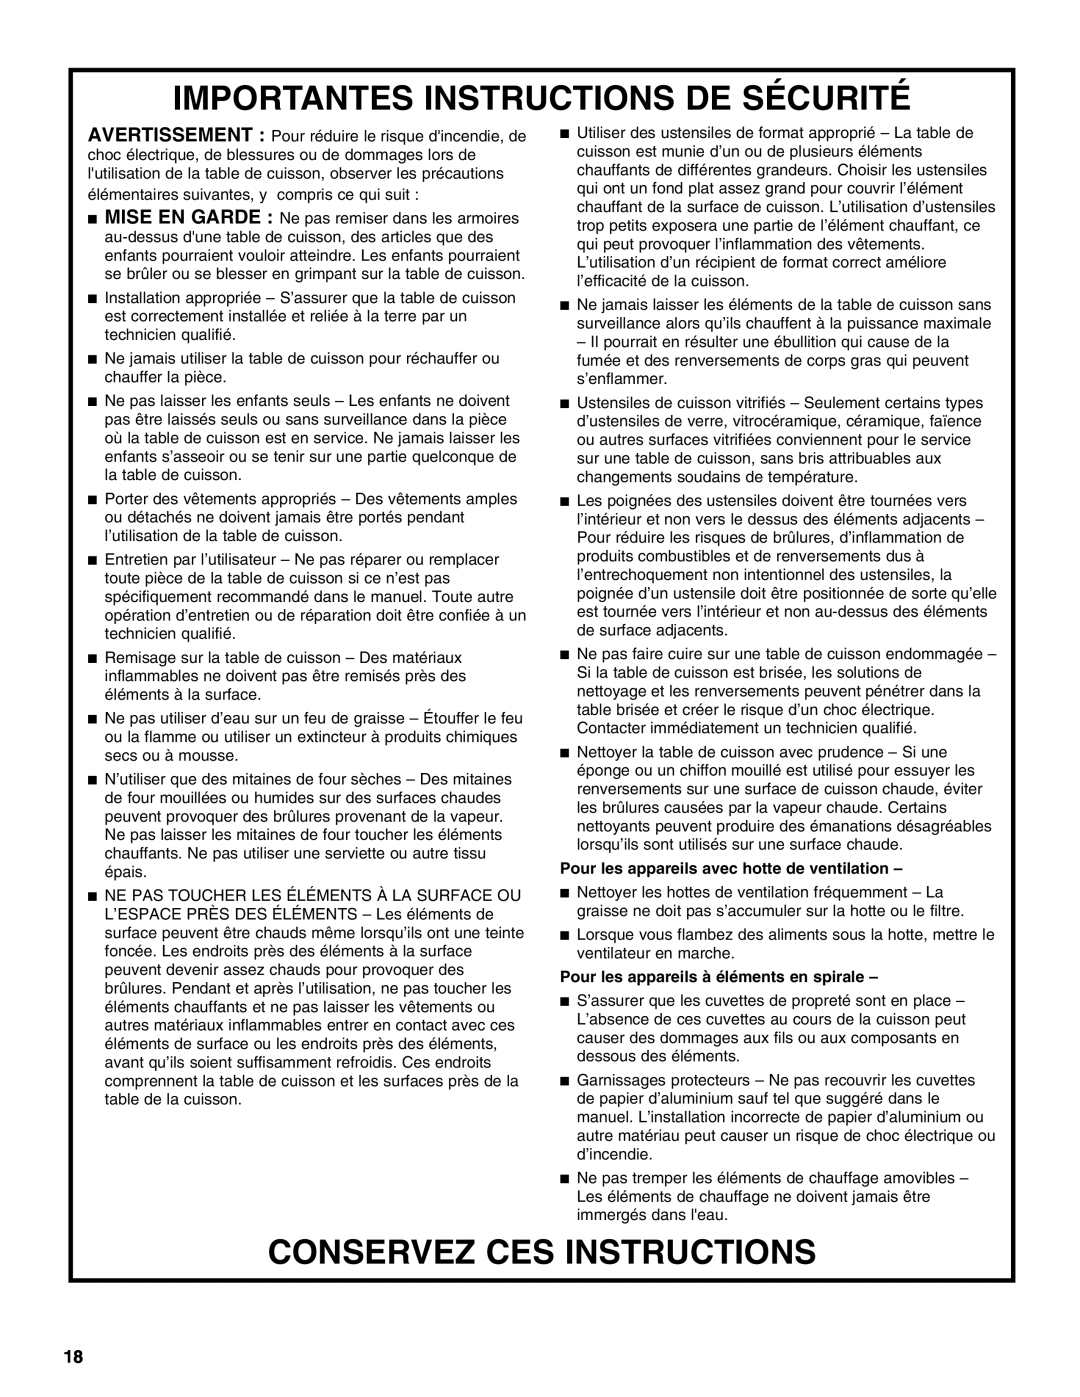 Whirlpool G9CE3675XB manual Importantes Instructions De Sécurité, Conservez Ces Instructions 